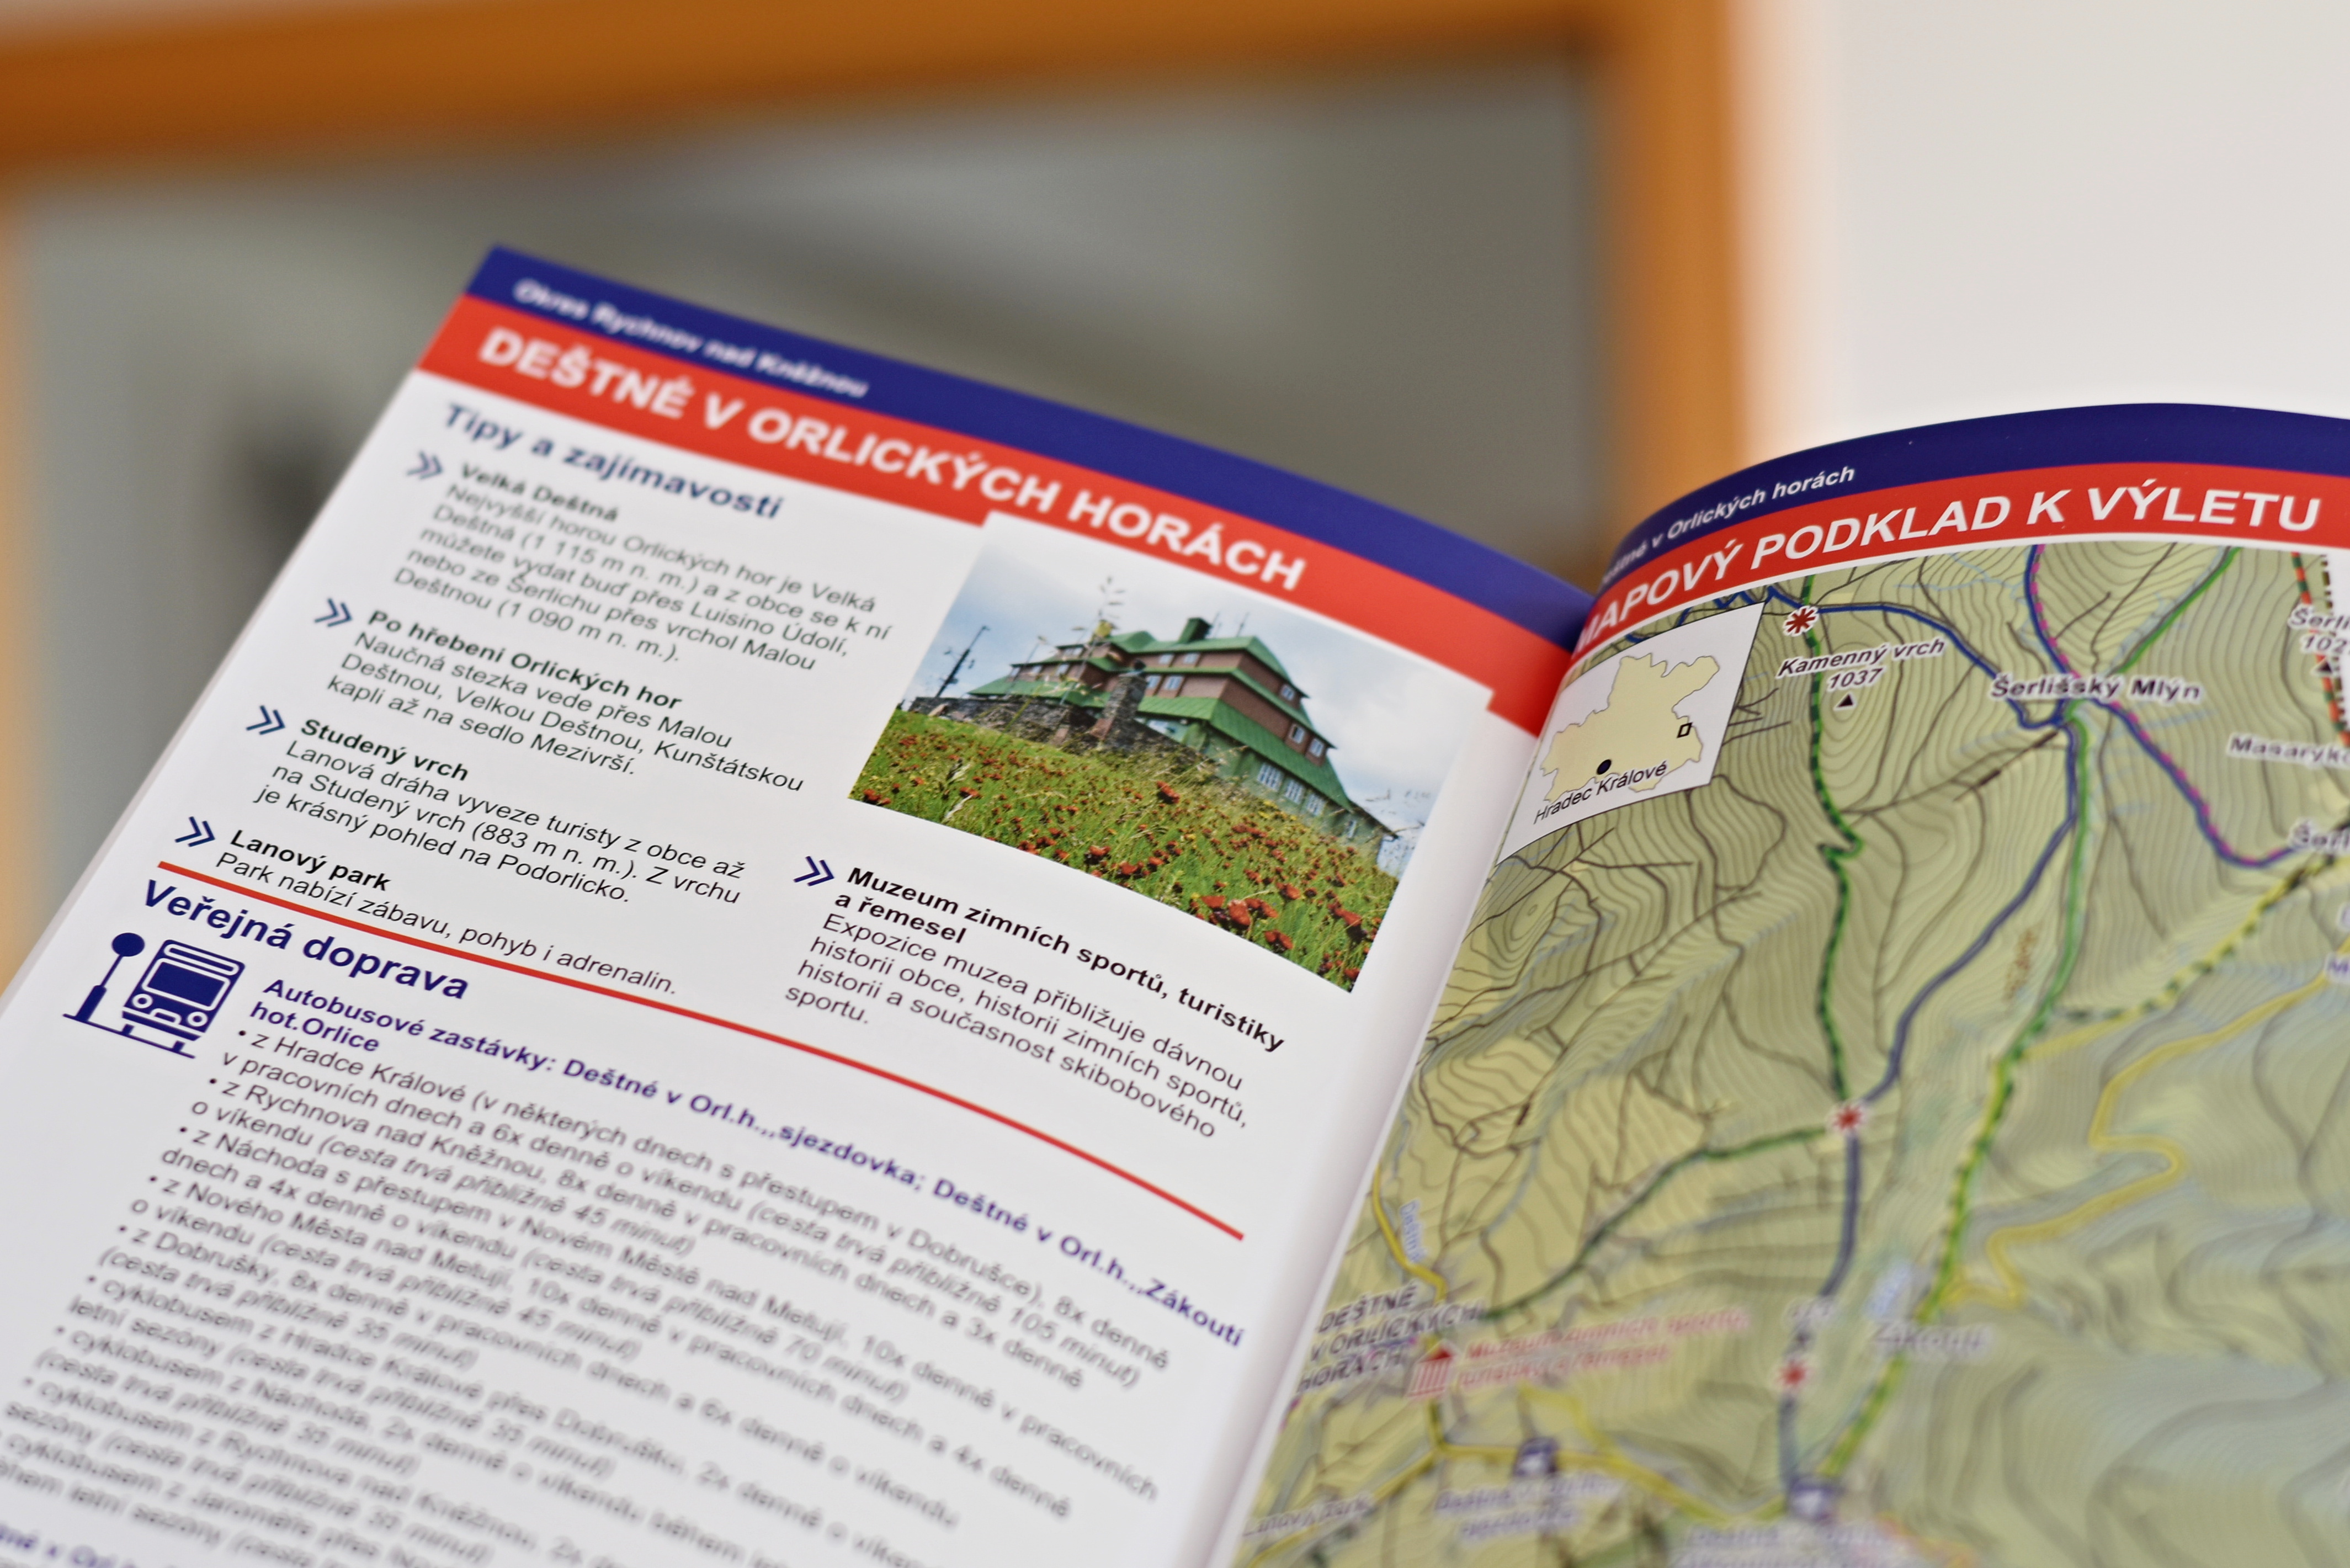 Brožura s tipy na výlety obsahuje místa, kam se turisté dostanou veřejnou dopravou